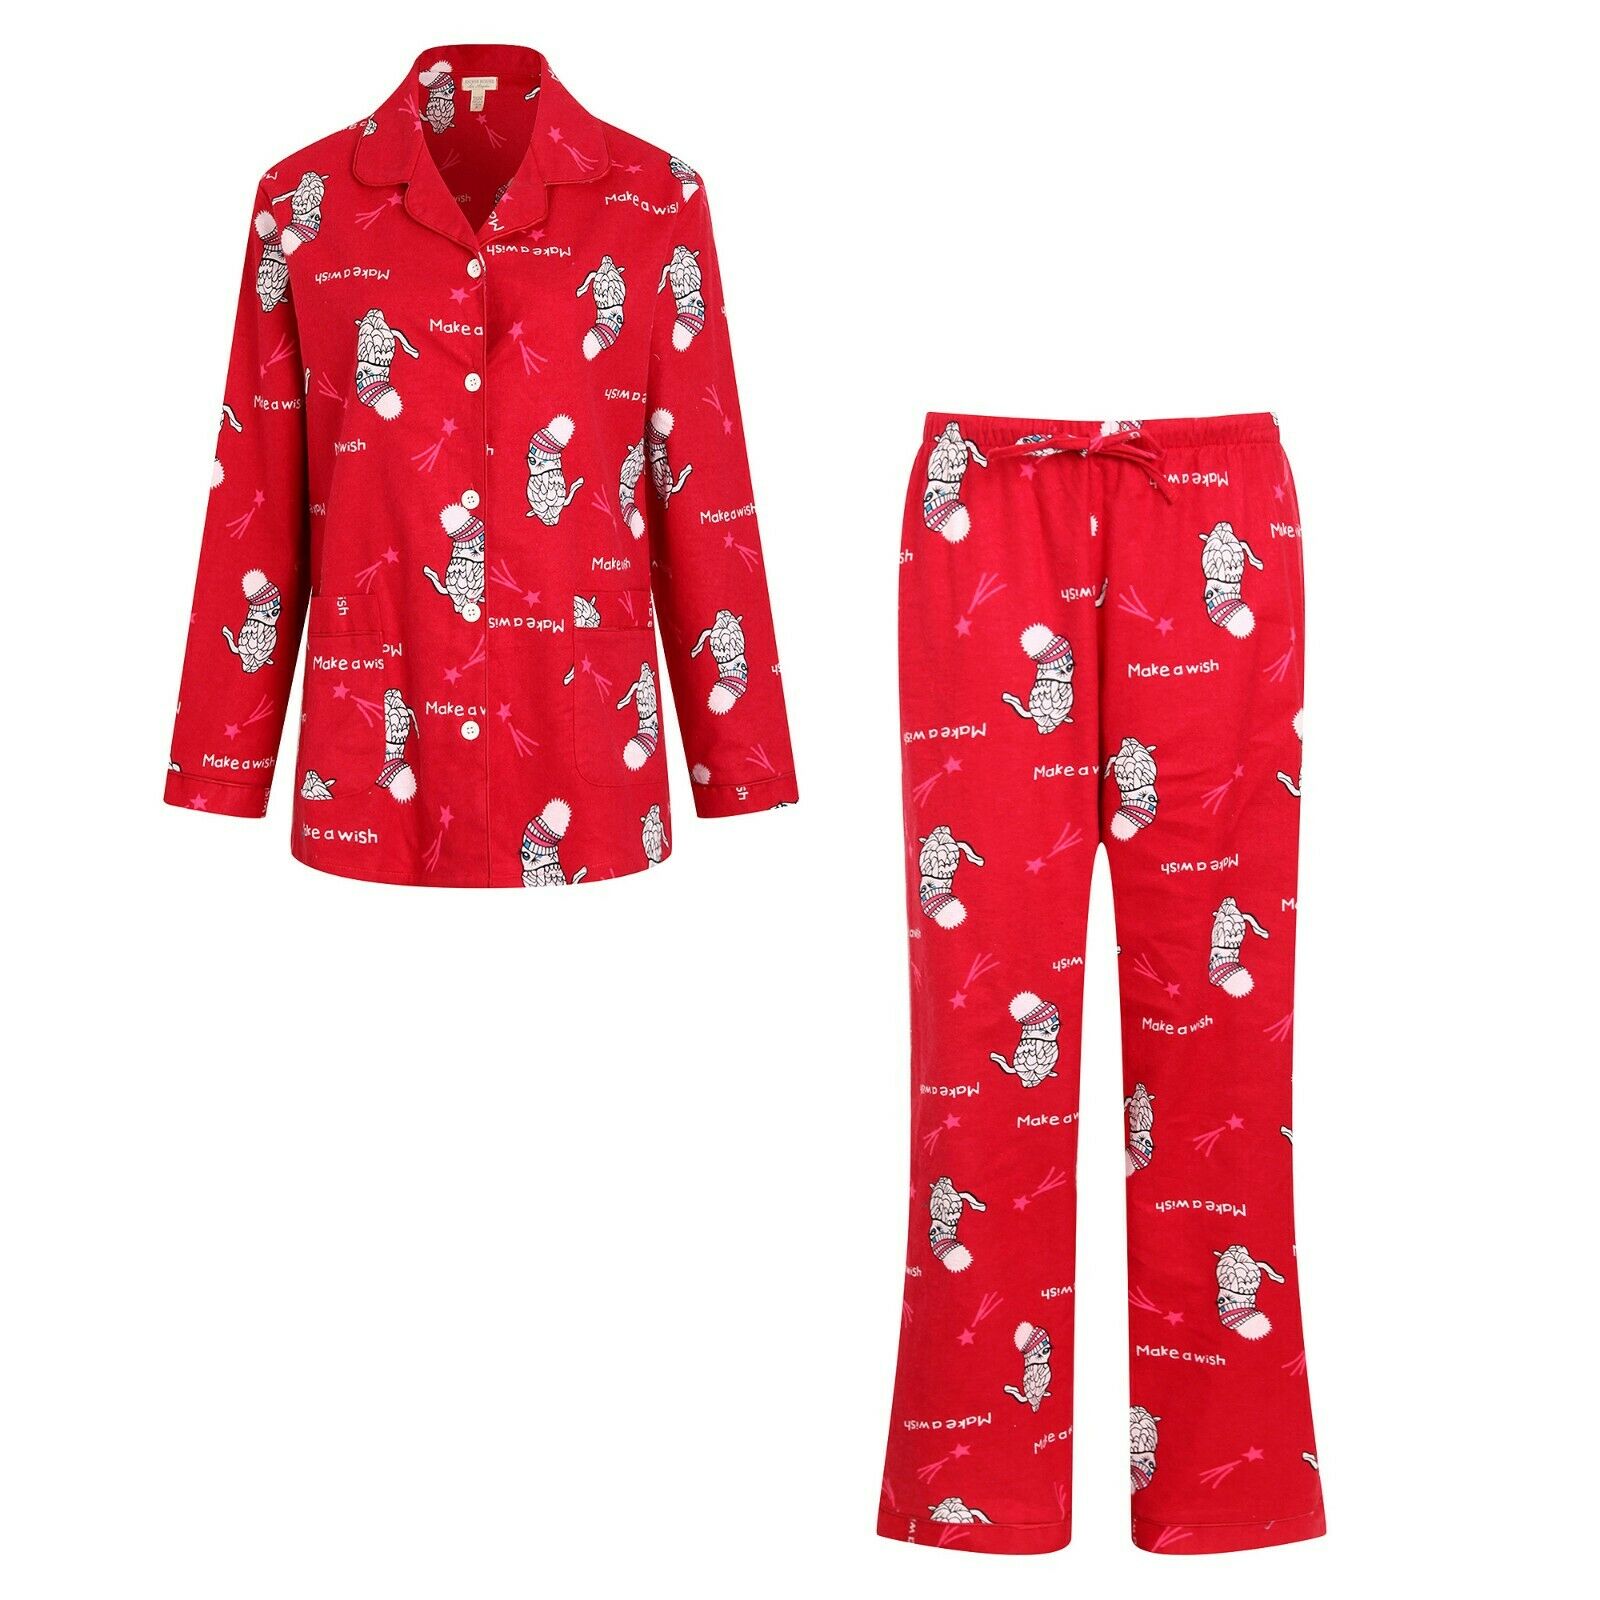 Richie House Men's Pajama Two-piece Pajama Set with Slippers RHM2850